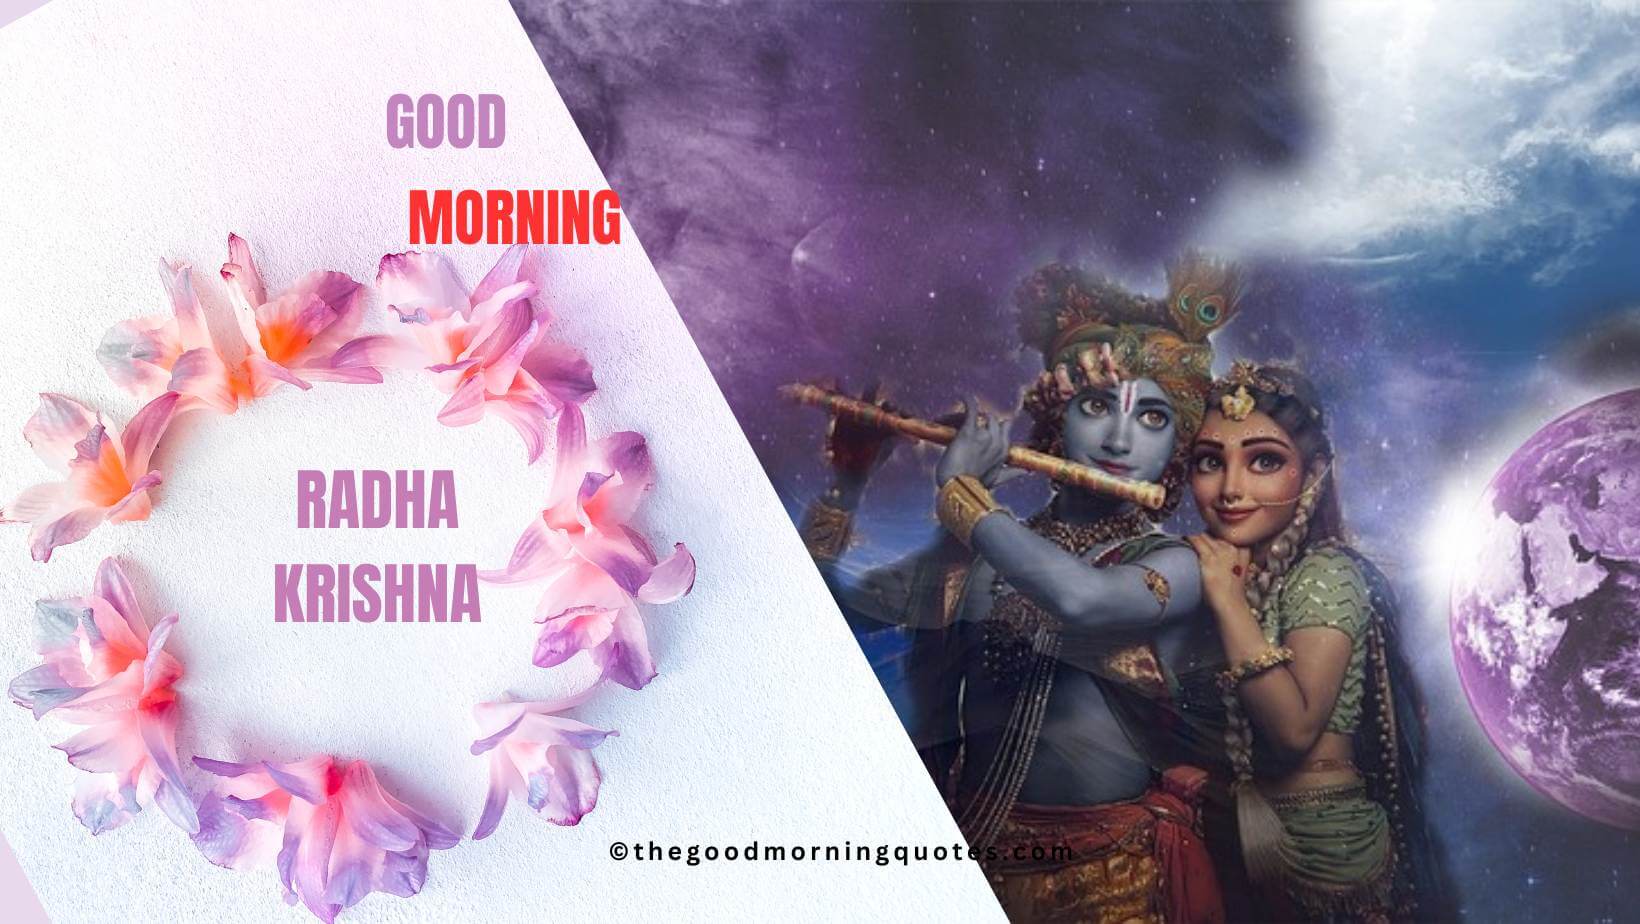 Radha Krishna Good Morning Quotes in Hindi